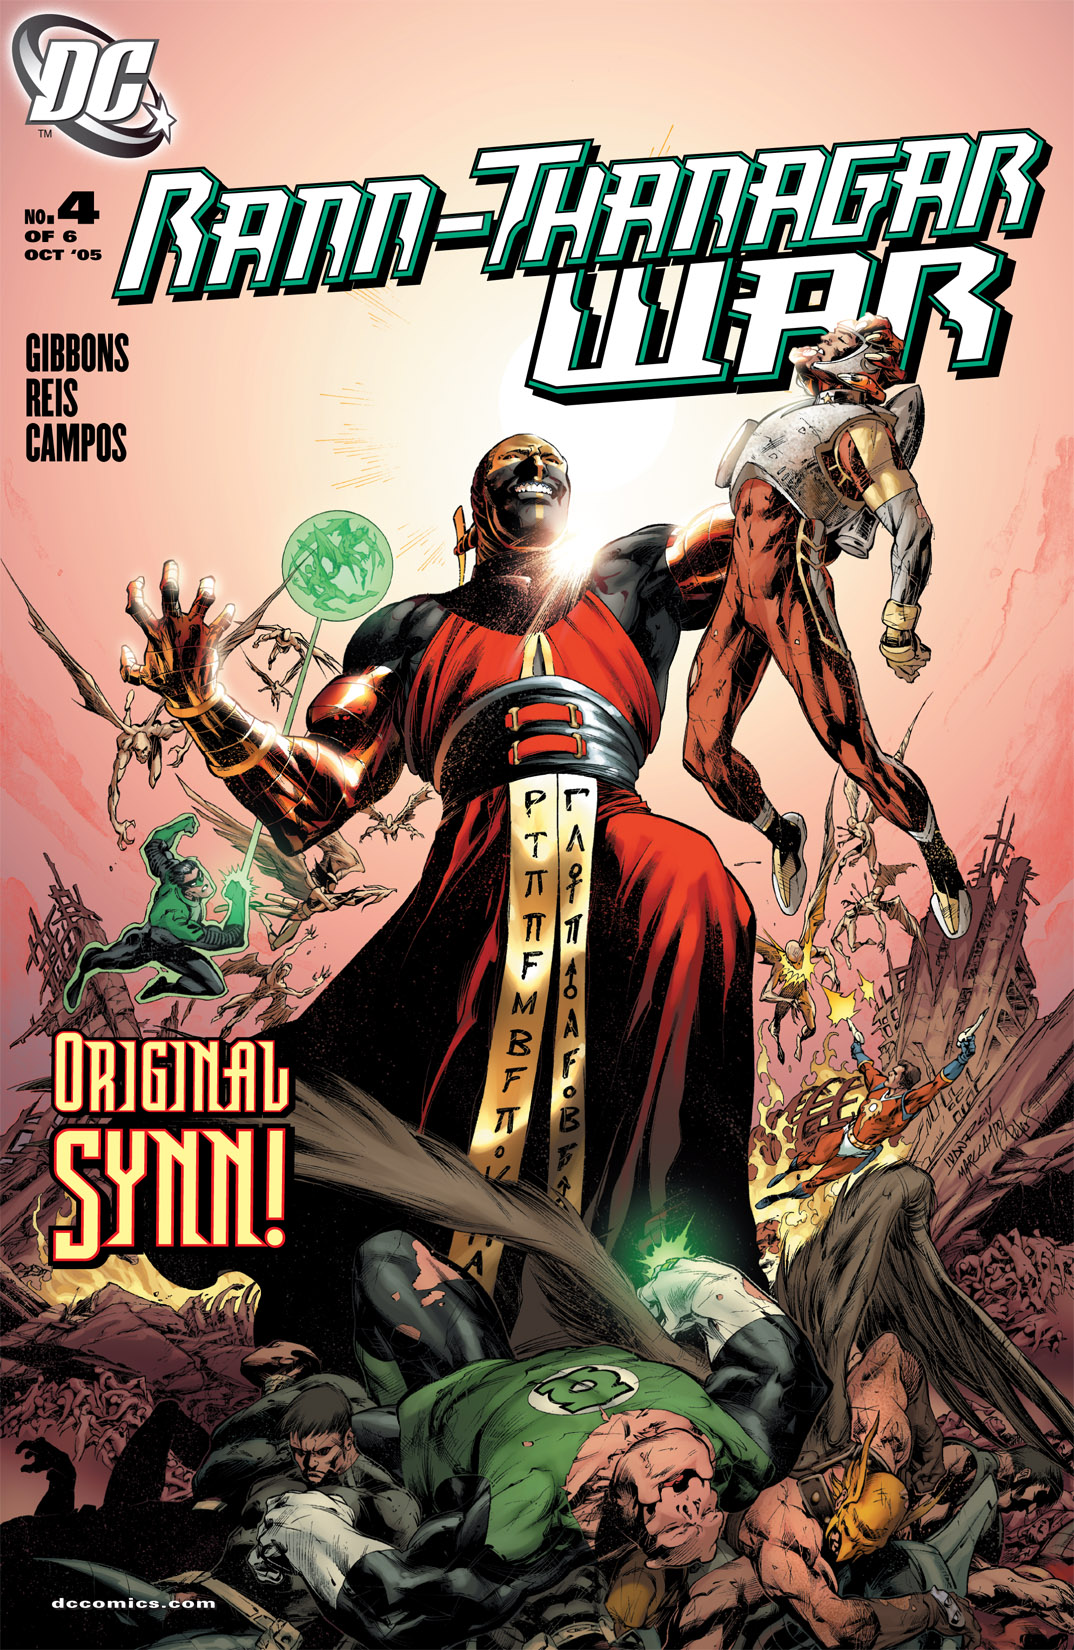 Read online Rann/Thanagar War comic -  Issue #4 - 1